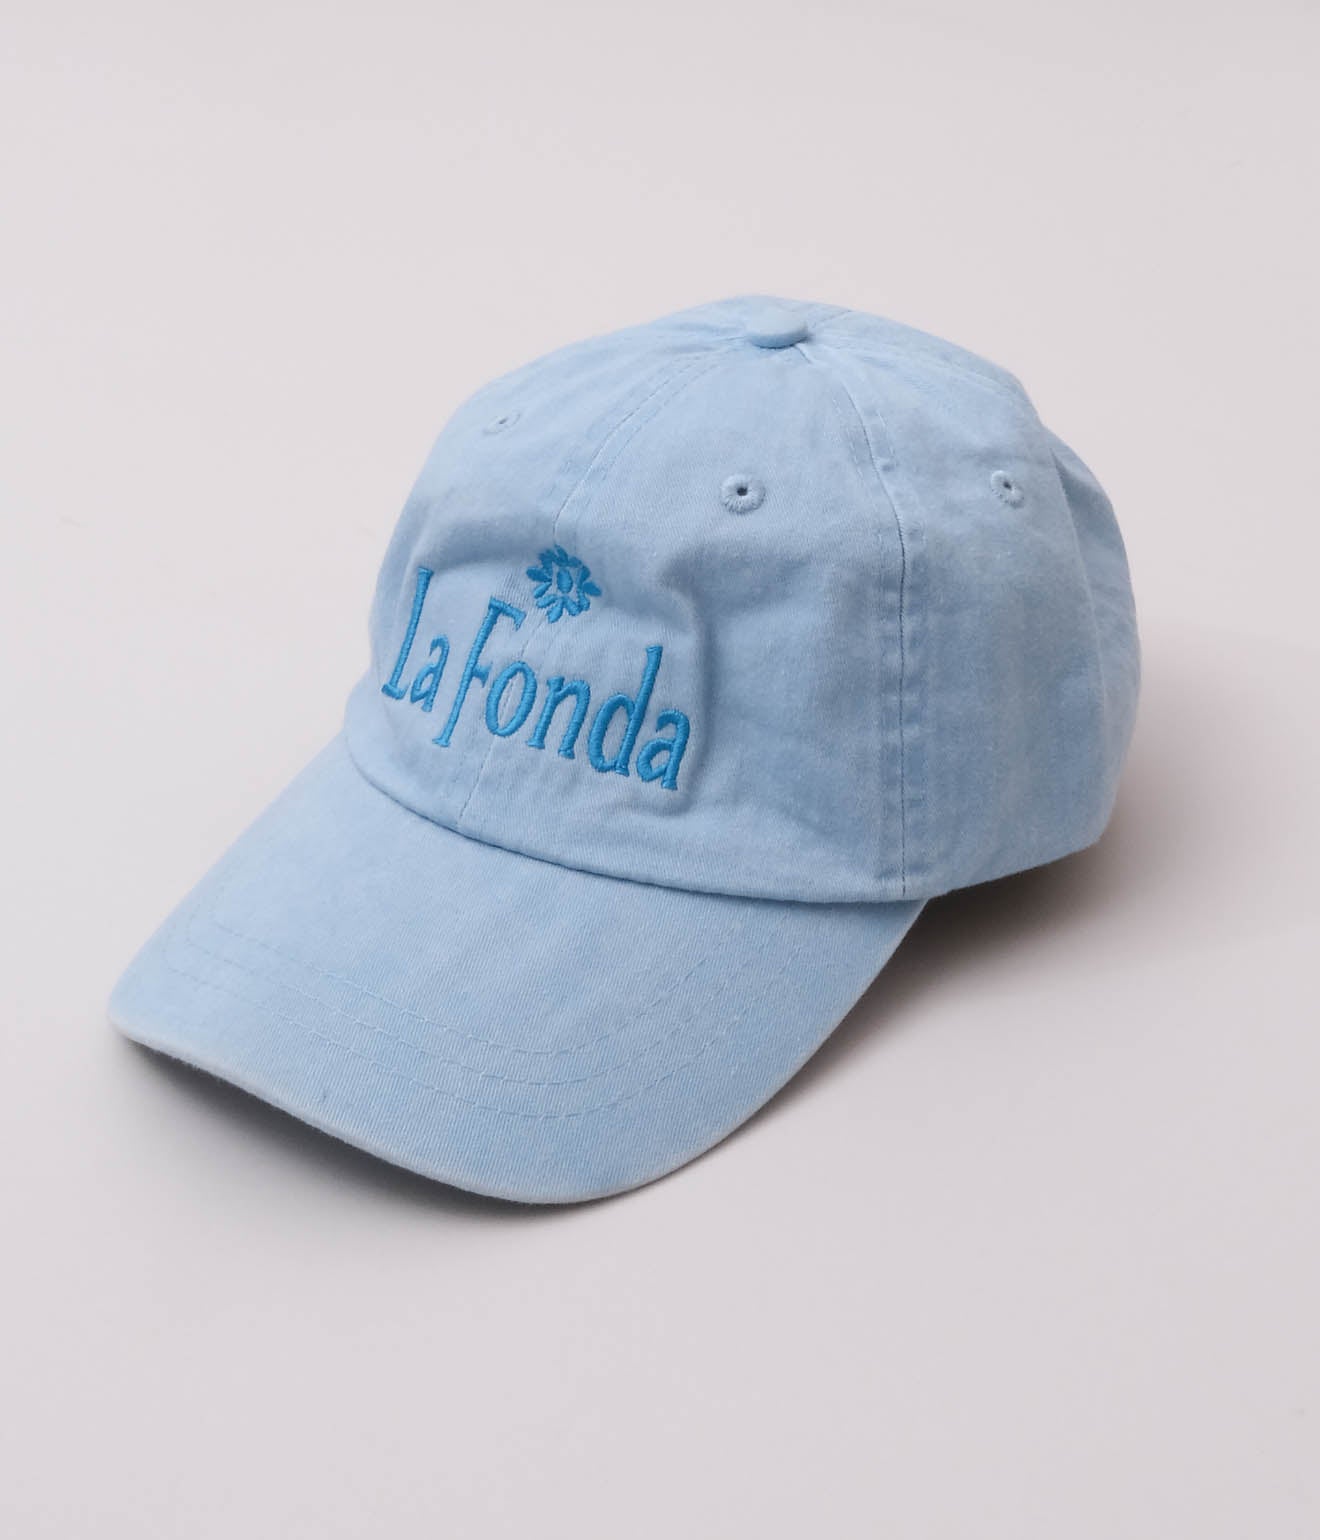 Souvenir Goods "La Fonda Hotel Cap" (Blue)